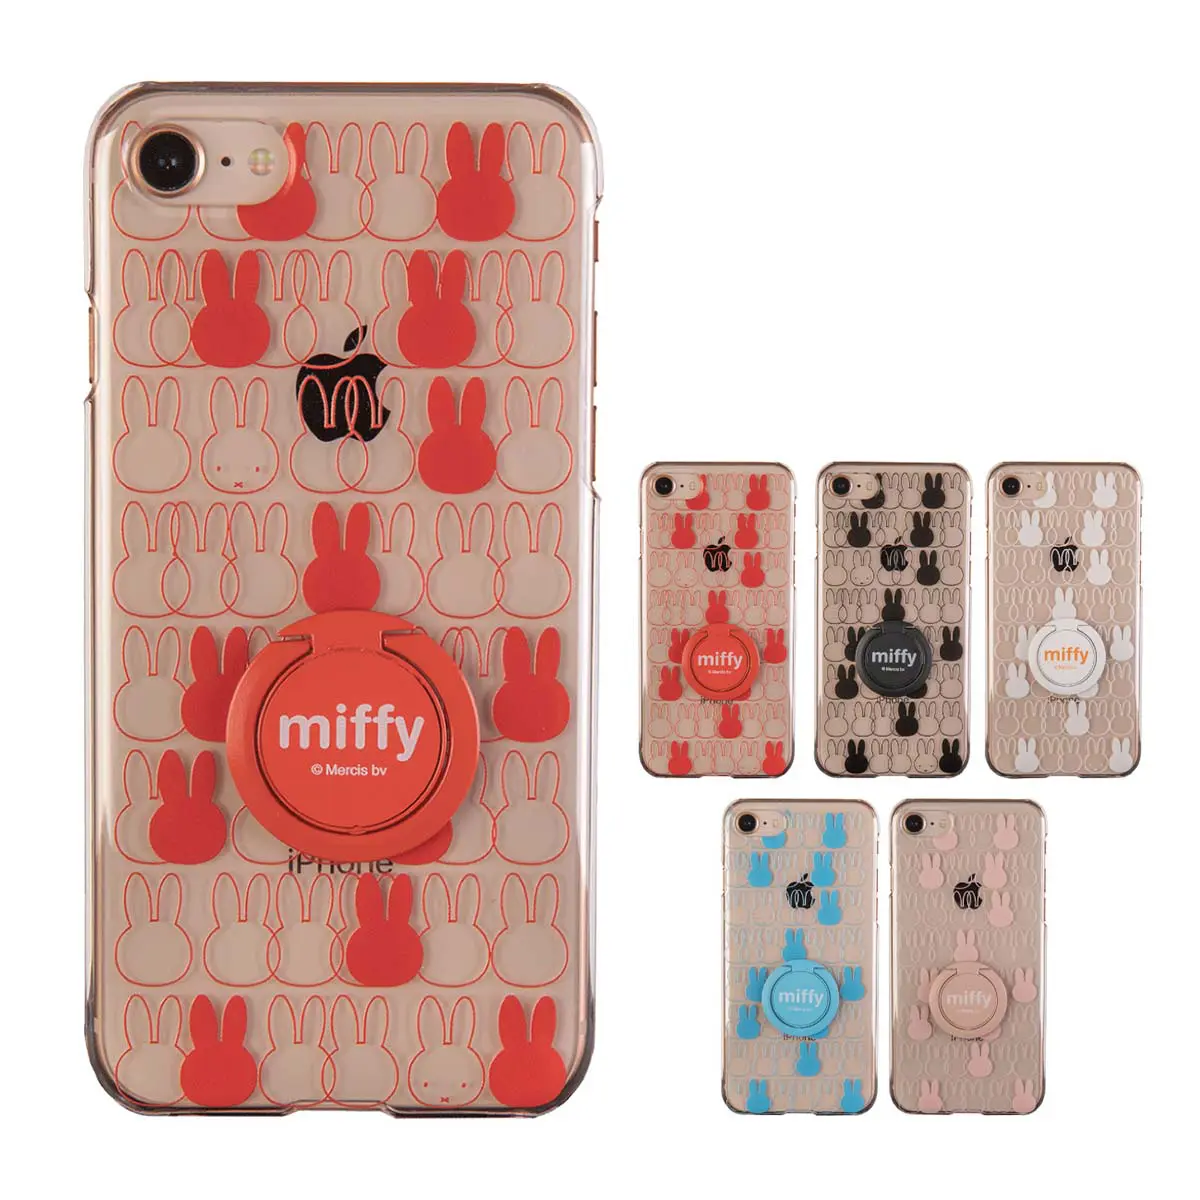 ミッフィー スマホケース 『miffy pattern クリア リング付』かわいいハード型 iphone アンドロイド - muomou SHOP